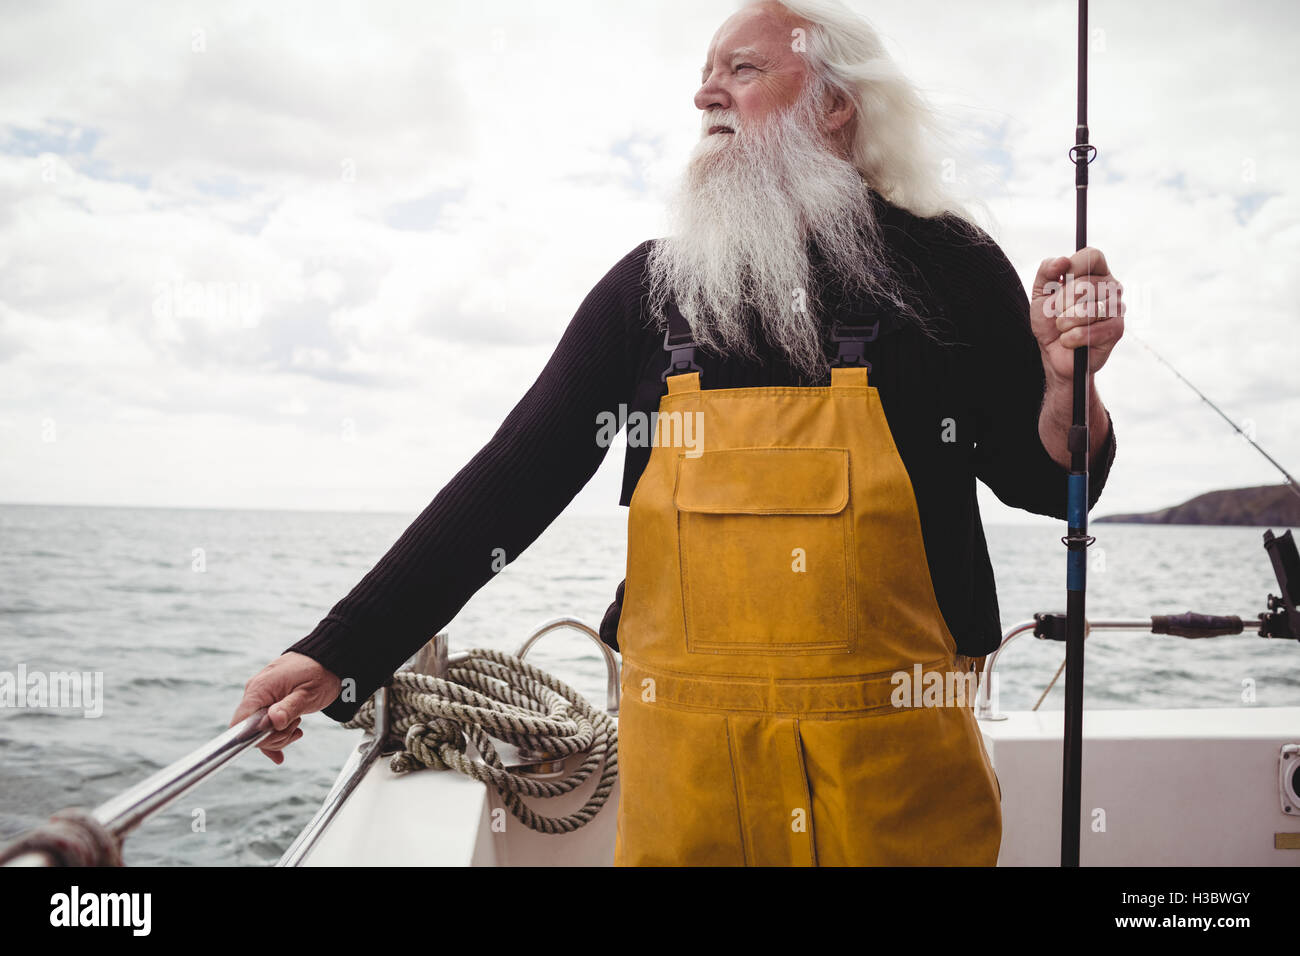 Debout sur le bateau pêcheur tenant la canne à pêche Banque D'Images